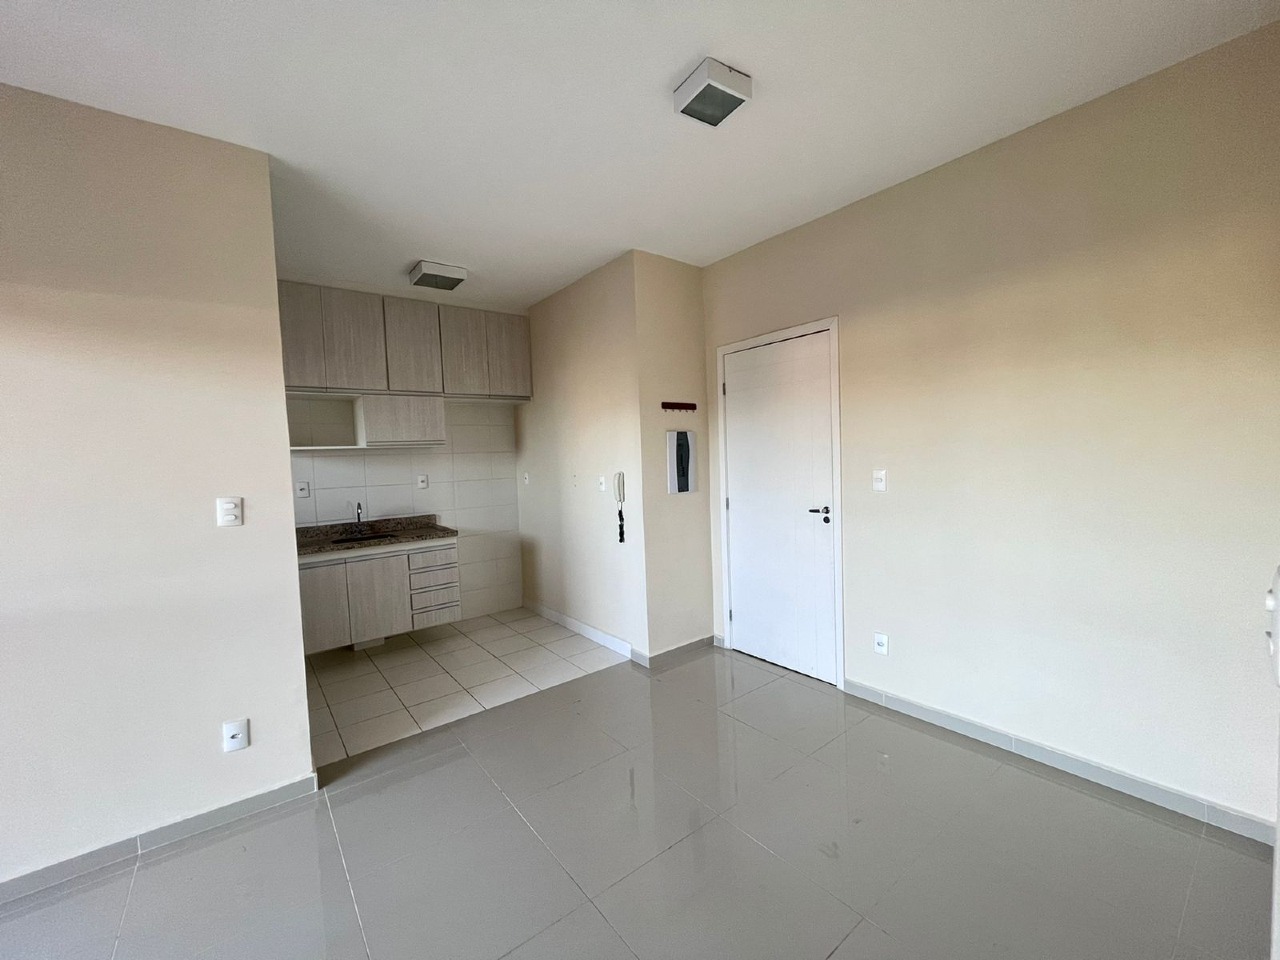 Apartamento à venda, 2 quartos, 1 vaga, no bairro Campestre em Piracicaba - SP